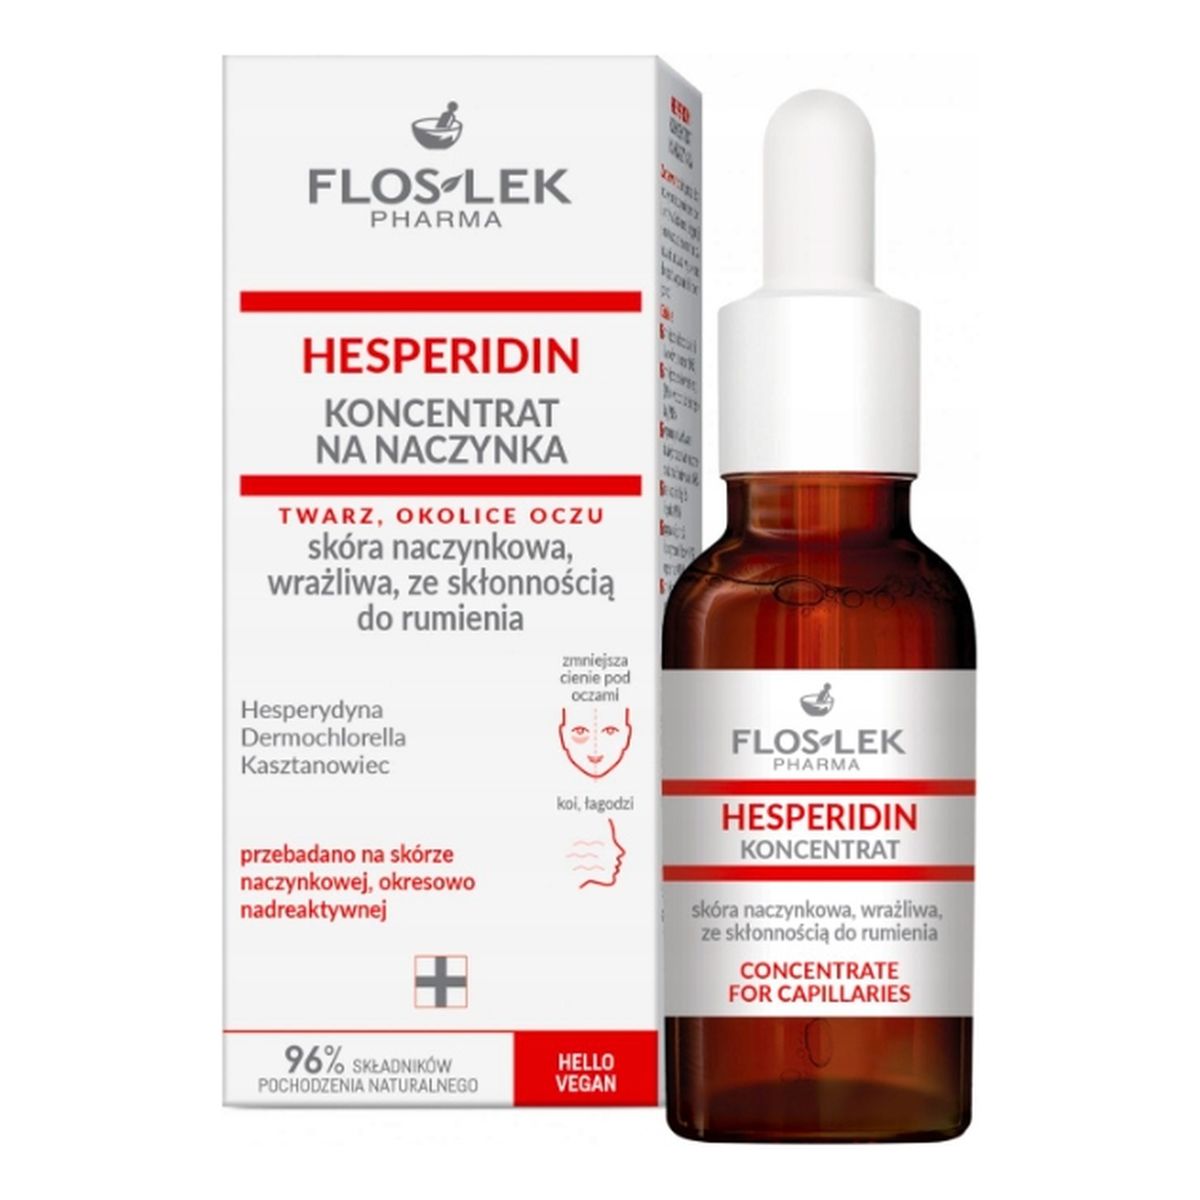 FlosLek Pharma Hesperidin koncentrat na naczynka-skóra naczynkowa,wrażliwa ze skłonnością do rumienia 30ml